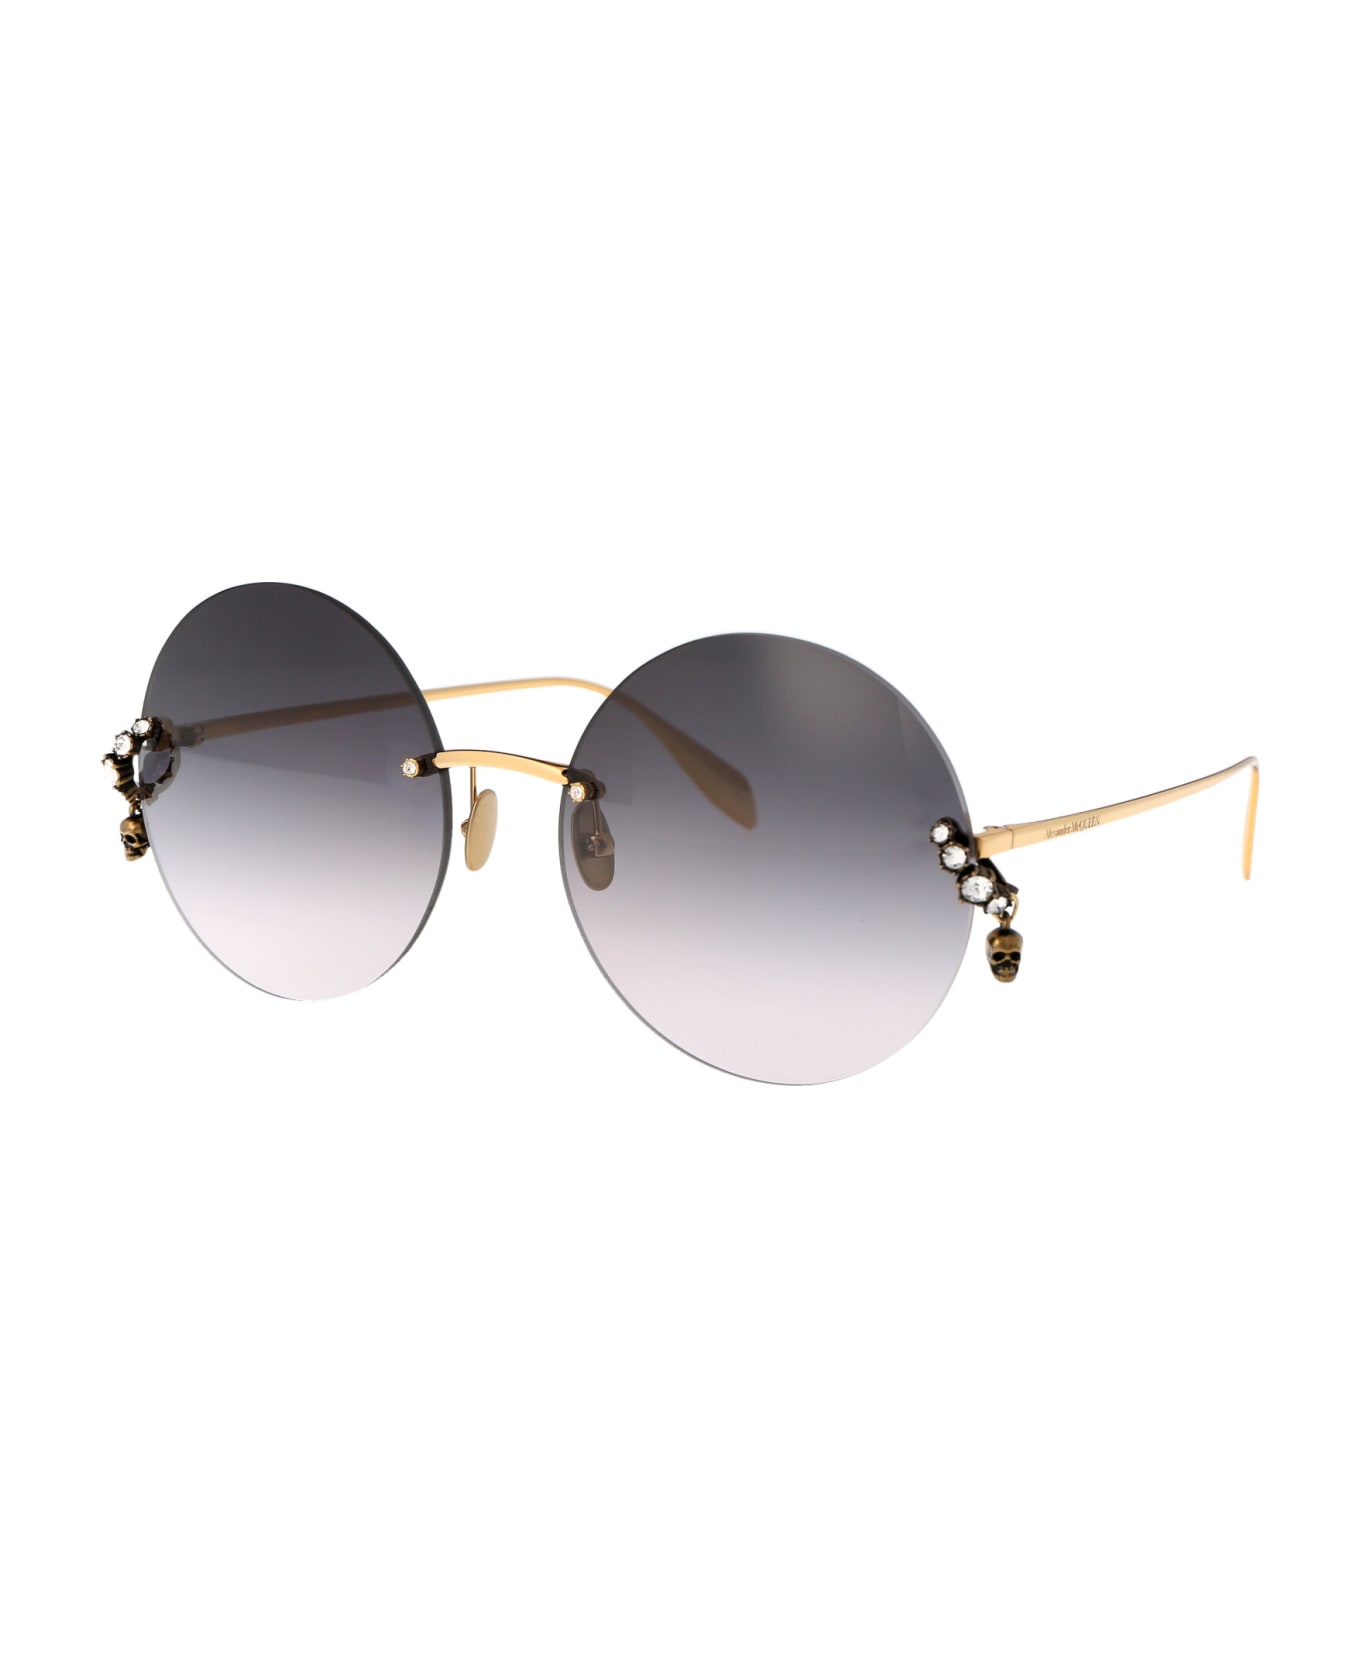 Alexander McQueen Eyewear Am0418s Sunglasses - 001 GOLD GOLD GREY